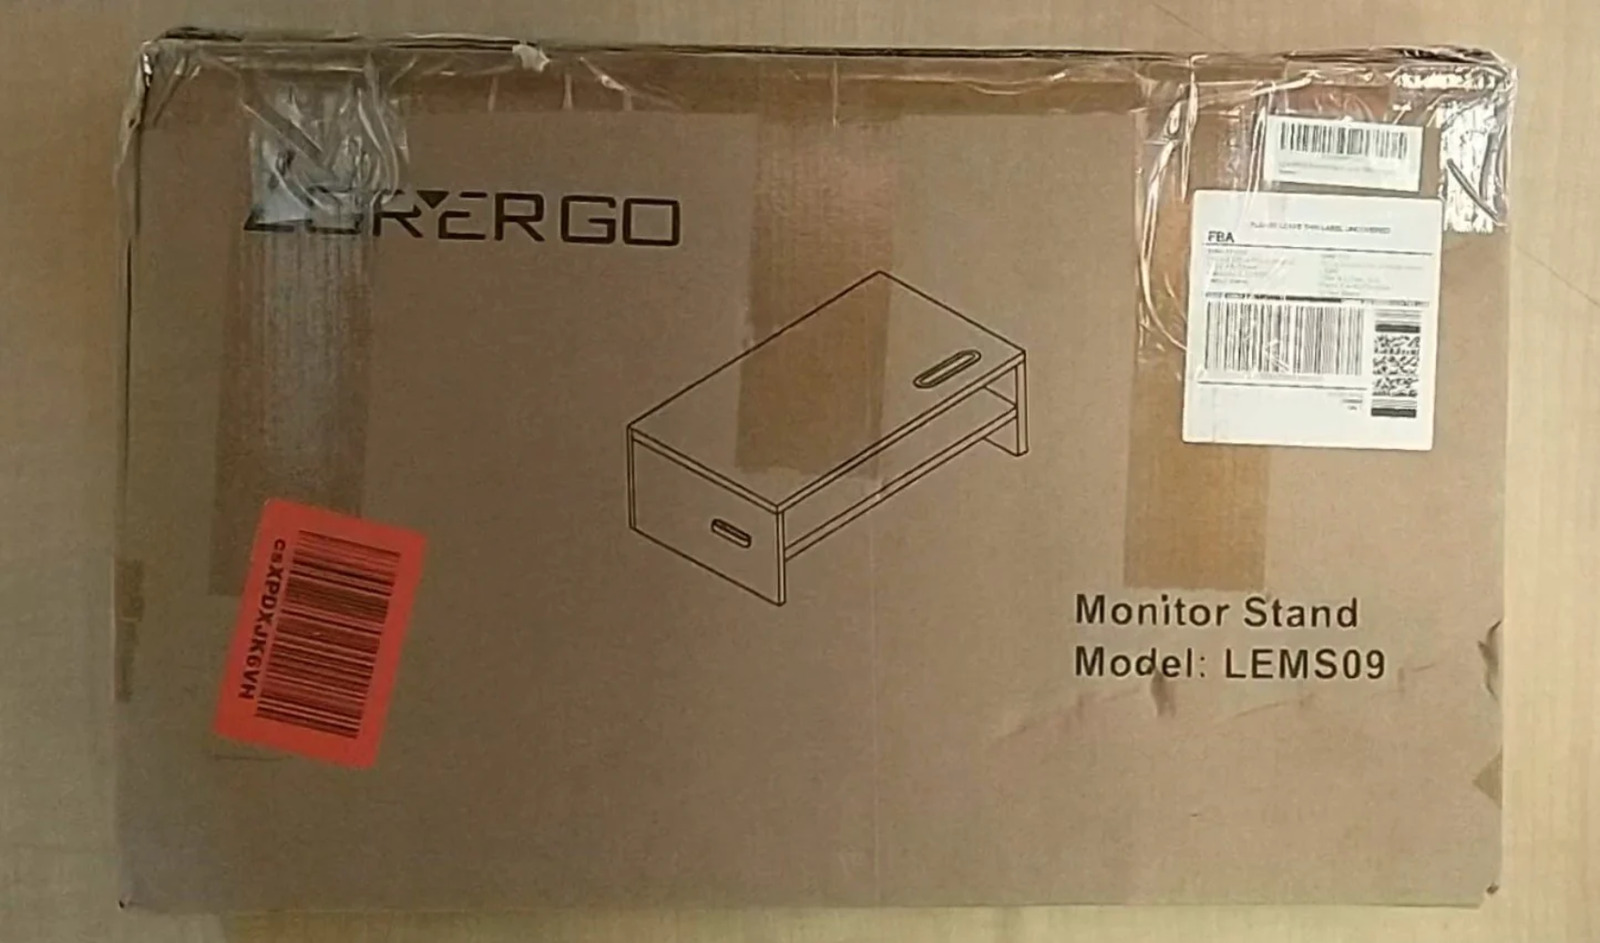 LORYERGO Monitor Stand 2 Tier Riser + Cellphone Holder & Storage Space Ergonomic